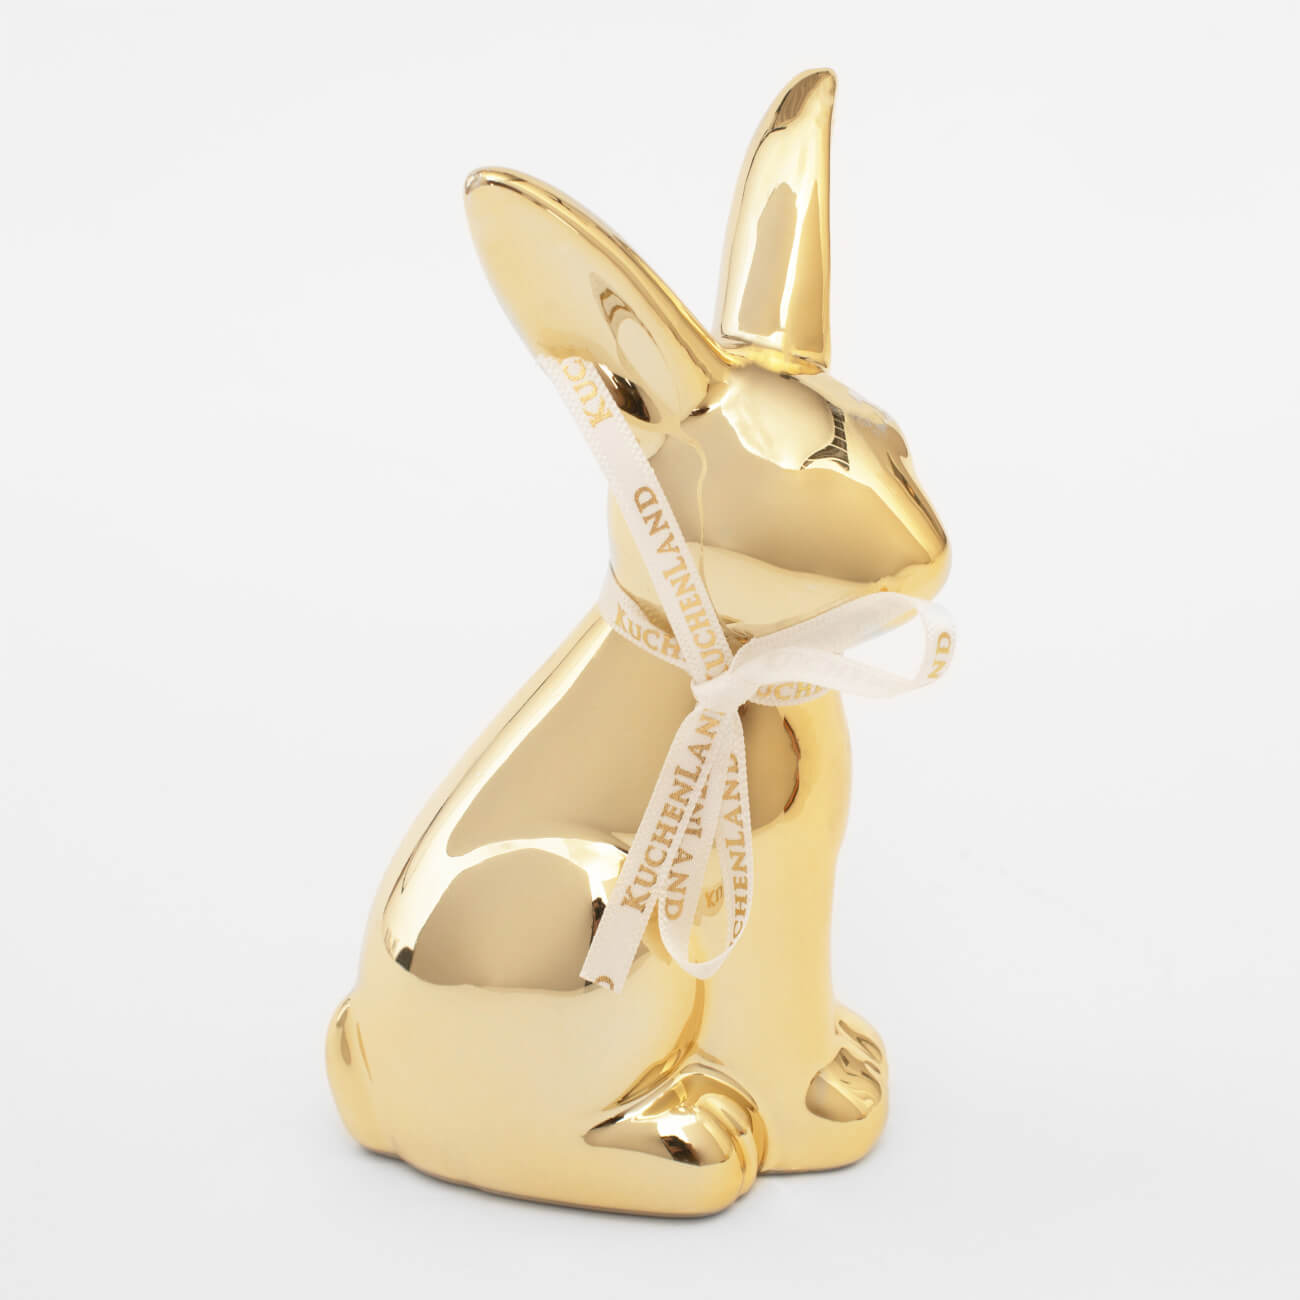 Статуэтка, 13 см, керамика, золотистая, Кролик, Easter gold статуэтка 13 см полирезин бело золотистая кролик с очным ожерельем easter gold